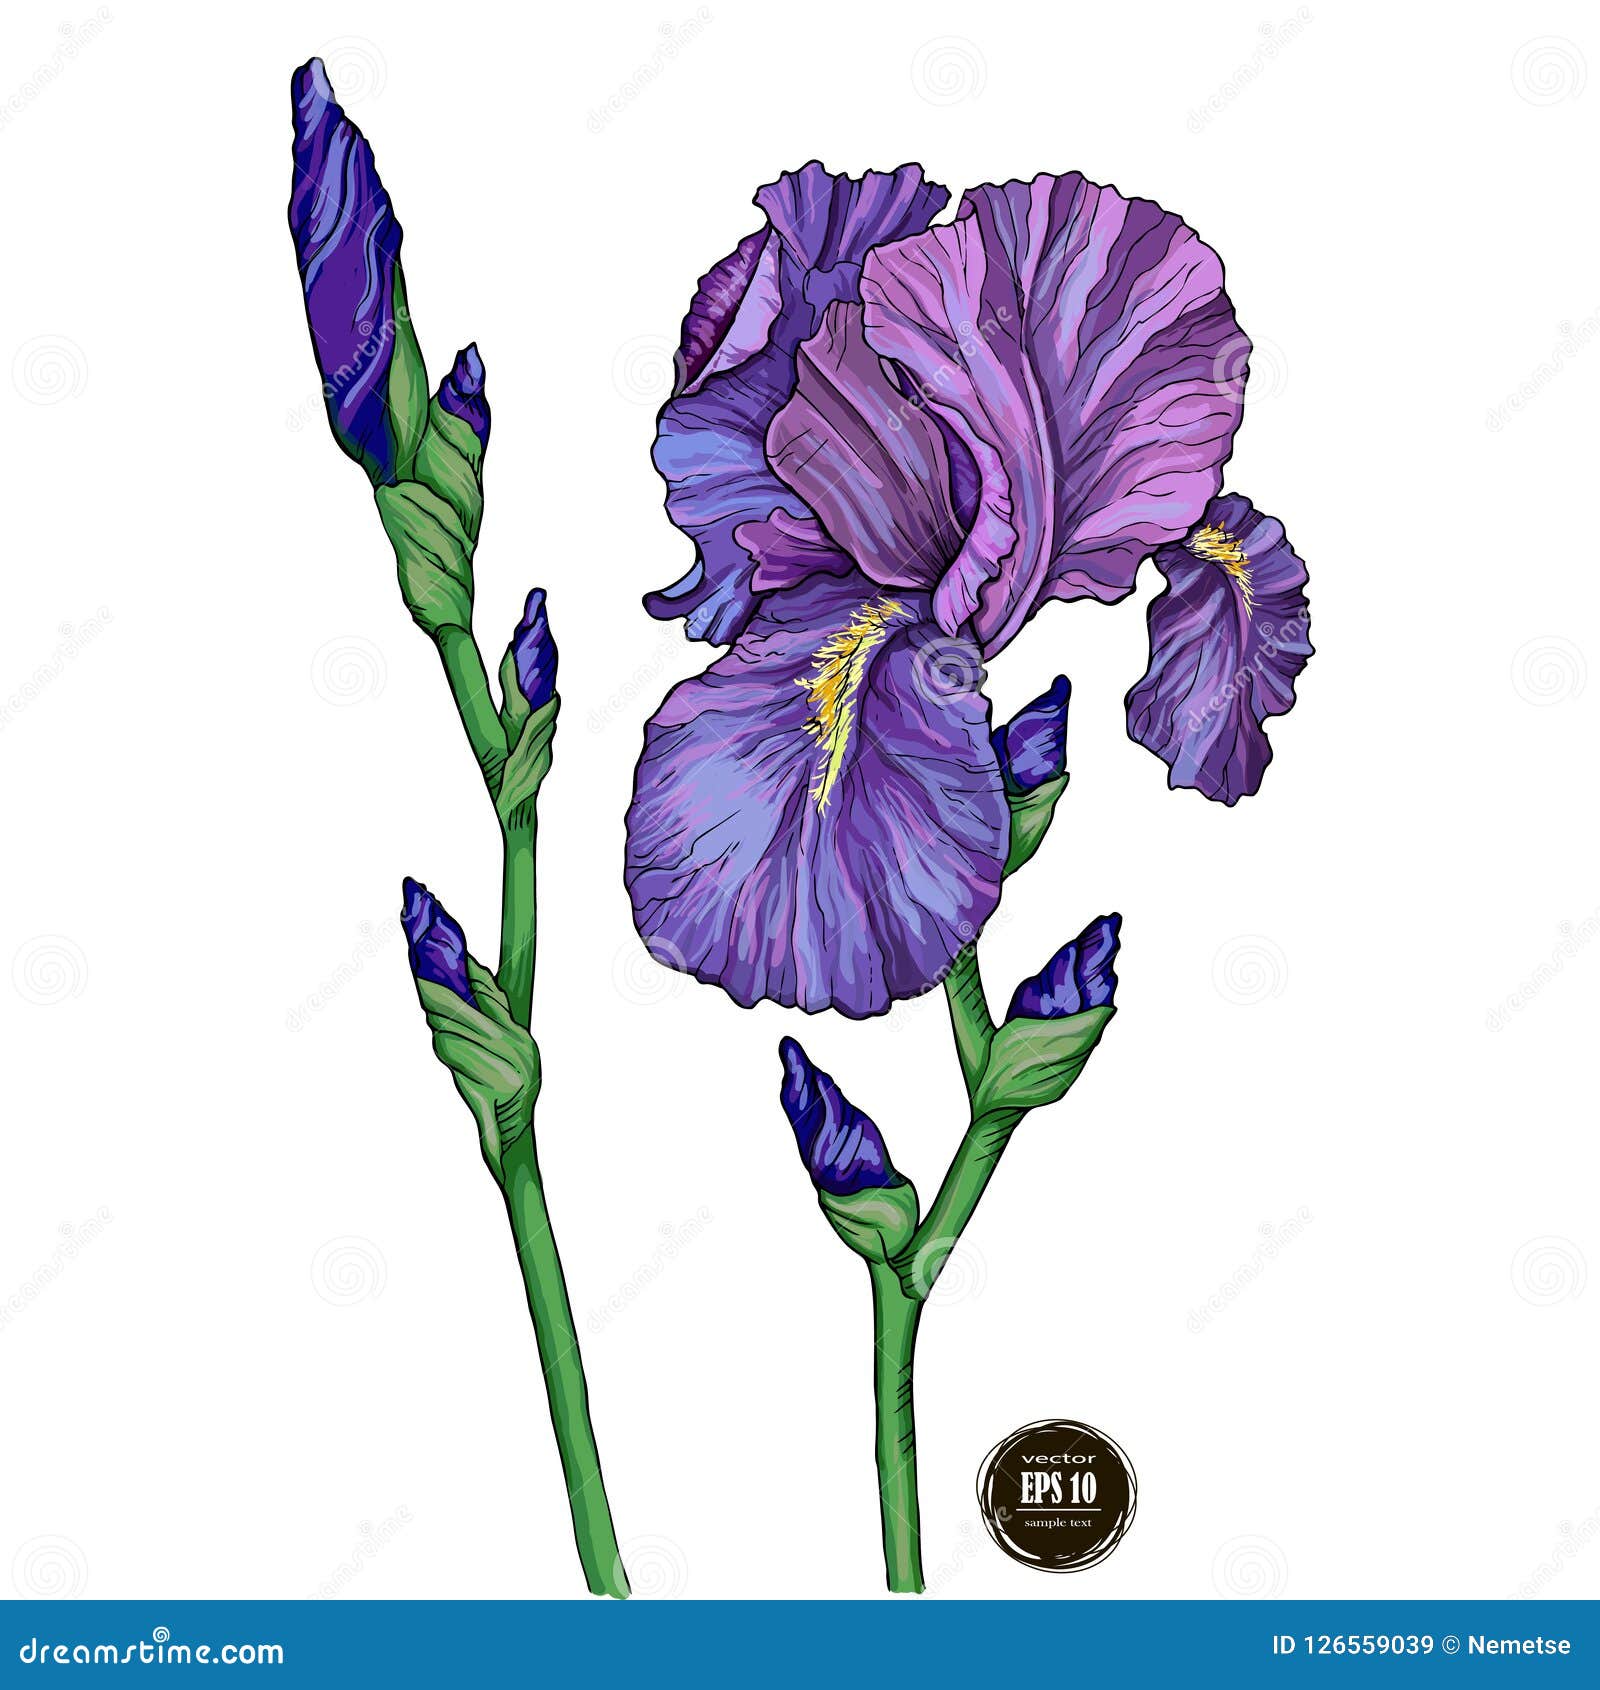 Iris Flower on White Background Stock Vector   Illustration of ...